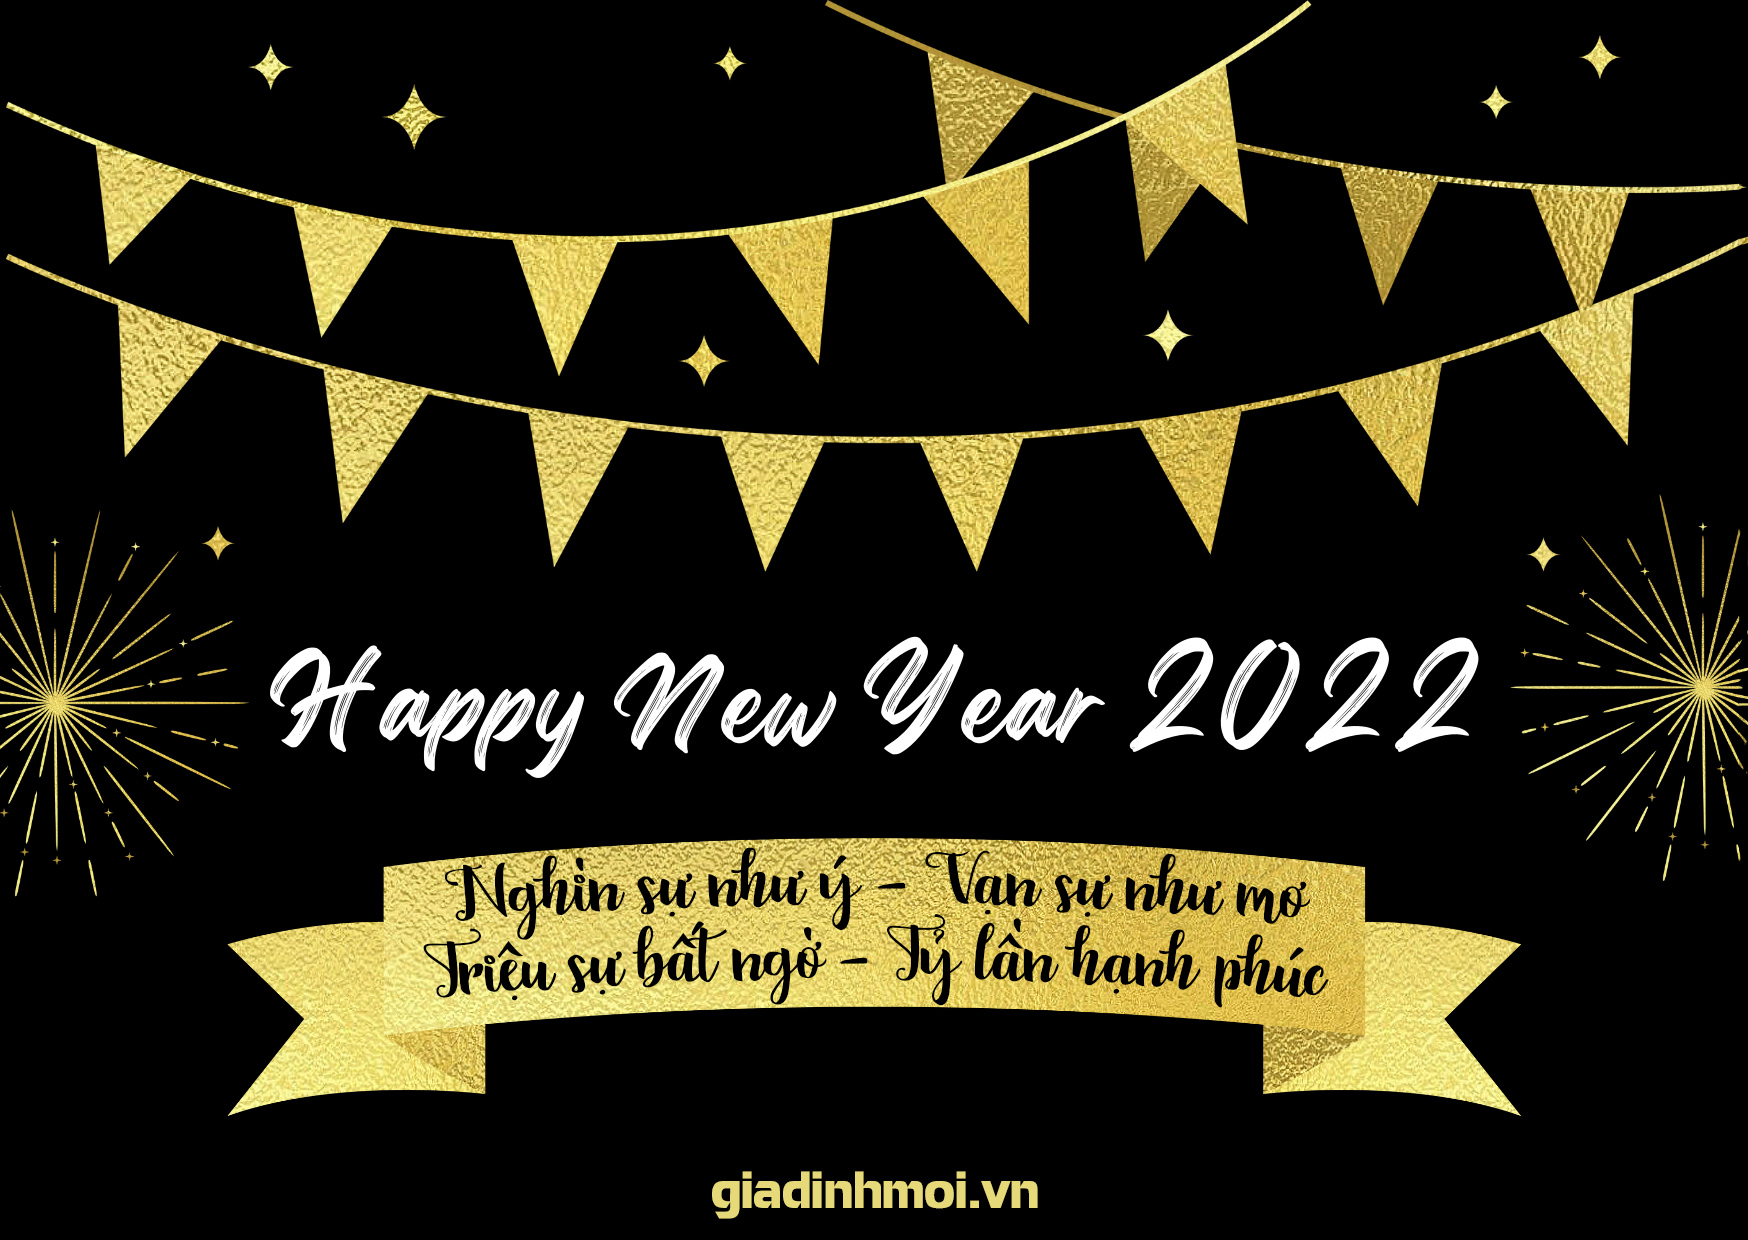 Tuyển tập thiệp chúc mừng năm mới 2022 đẹp, độc, ý nghĩa tặng mọi người 1